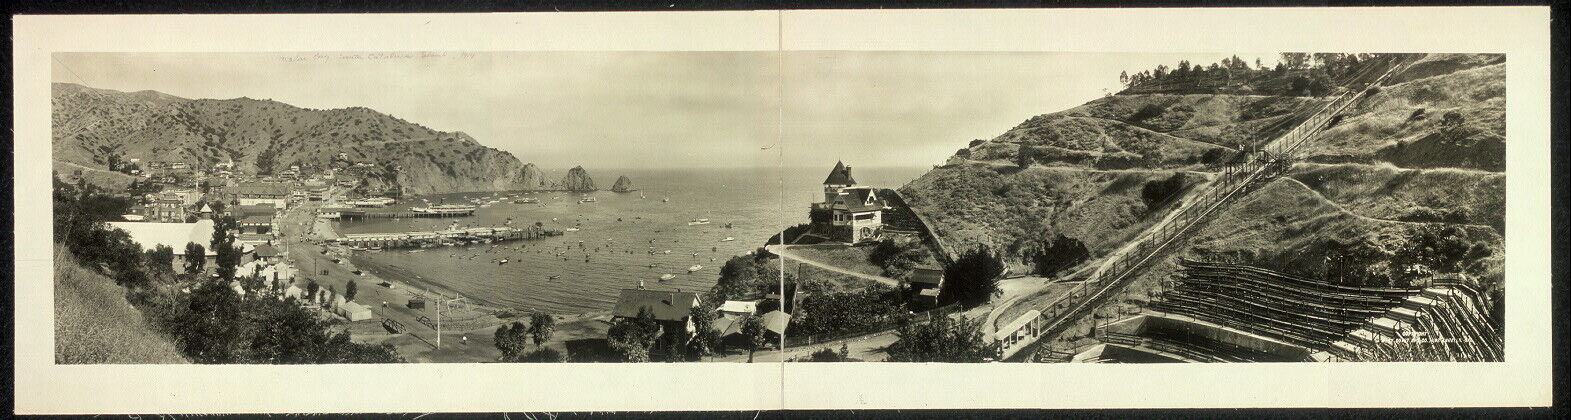 Photo:1914 Panoramic: Avalon Bay,Santa Catalina Island